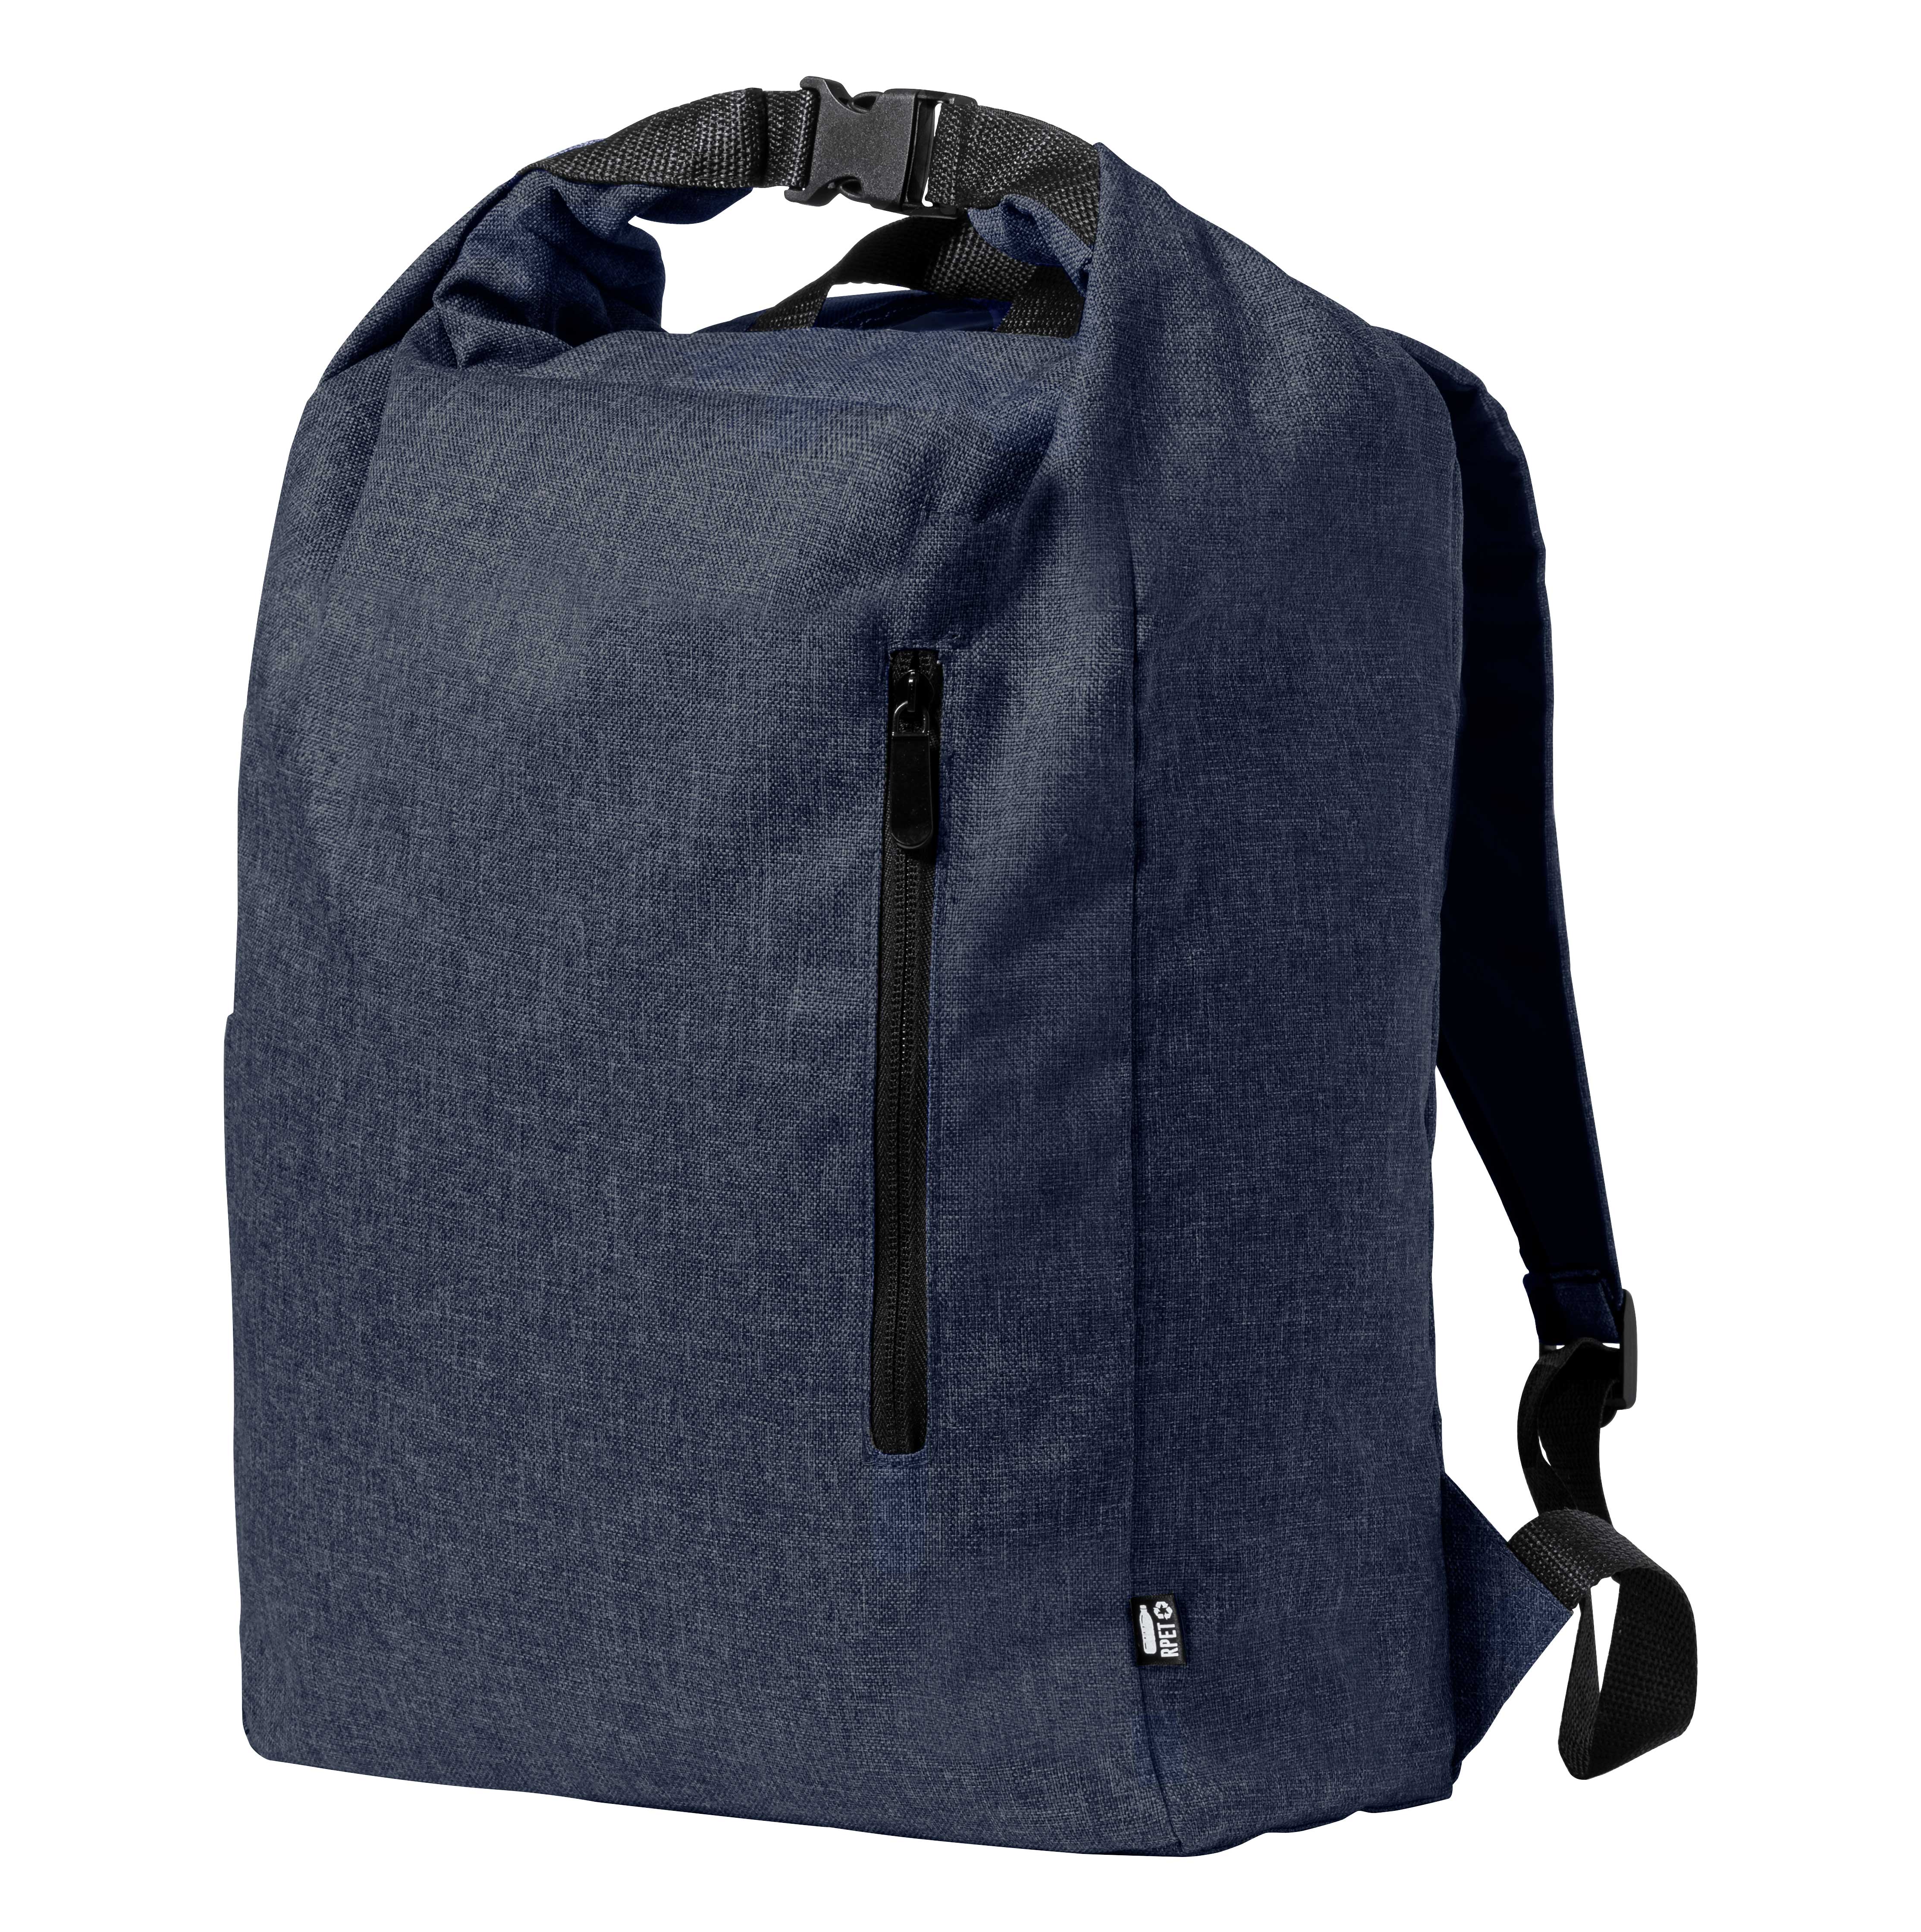 Sherpak RPET backpack - blue